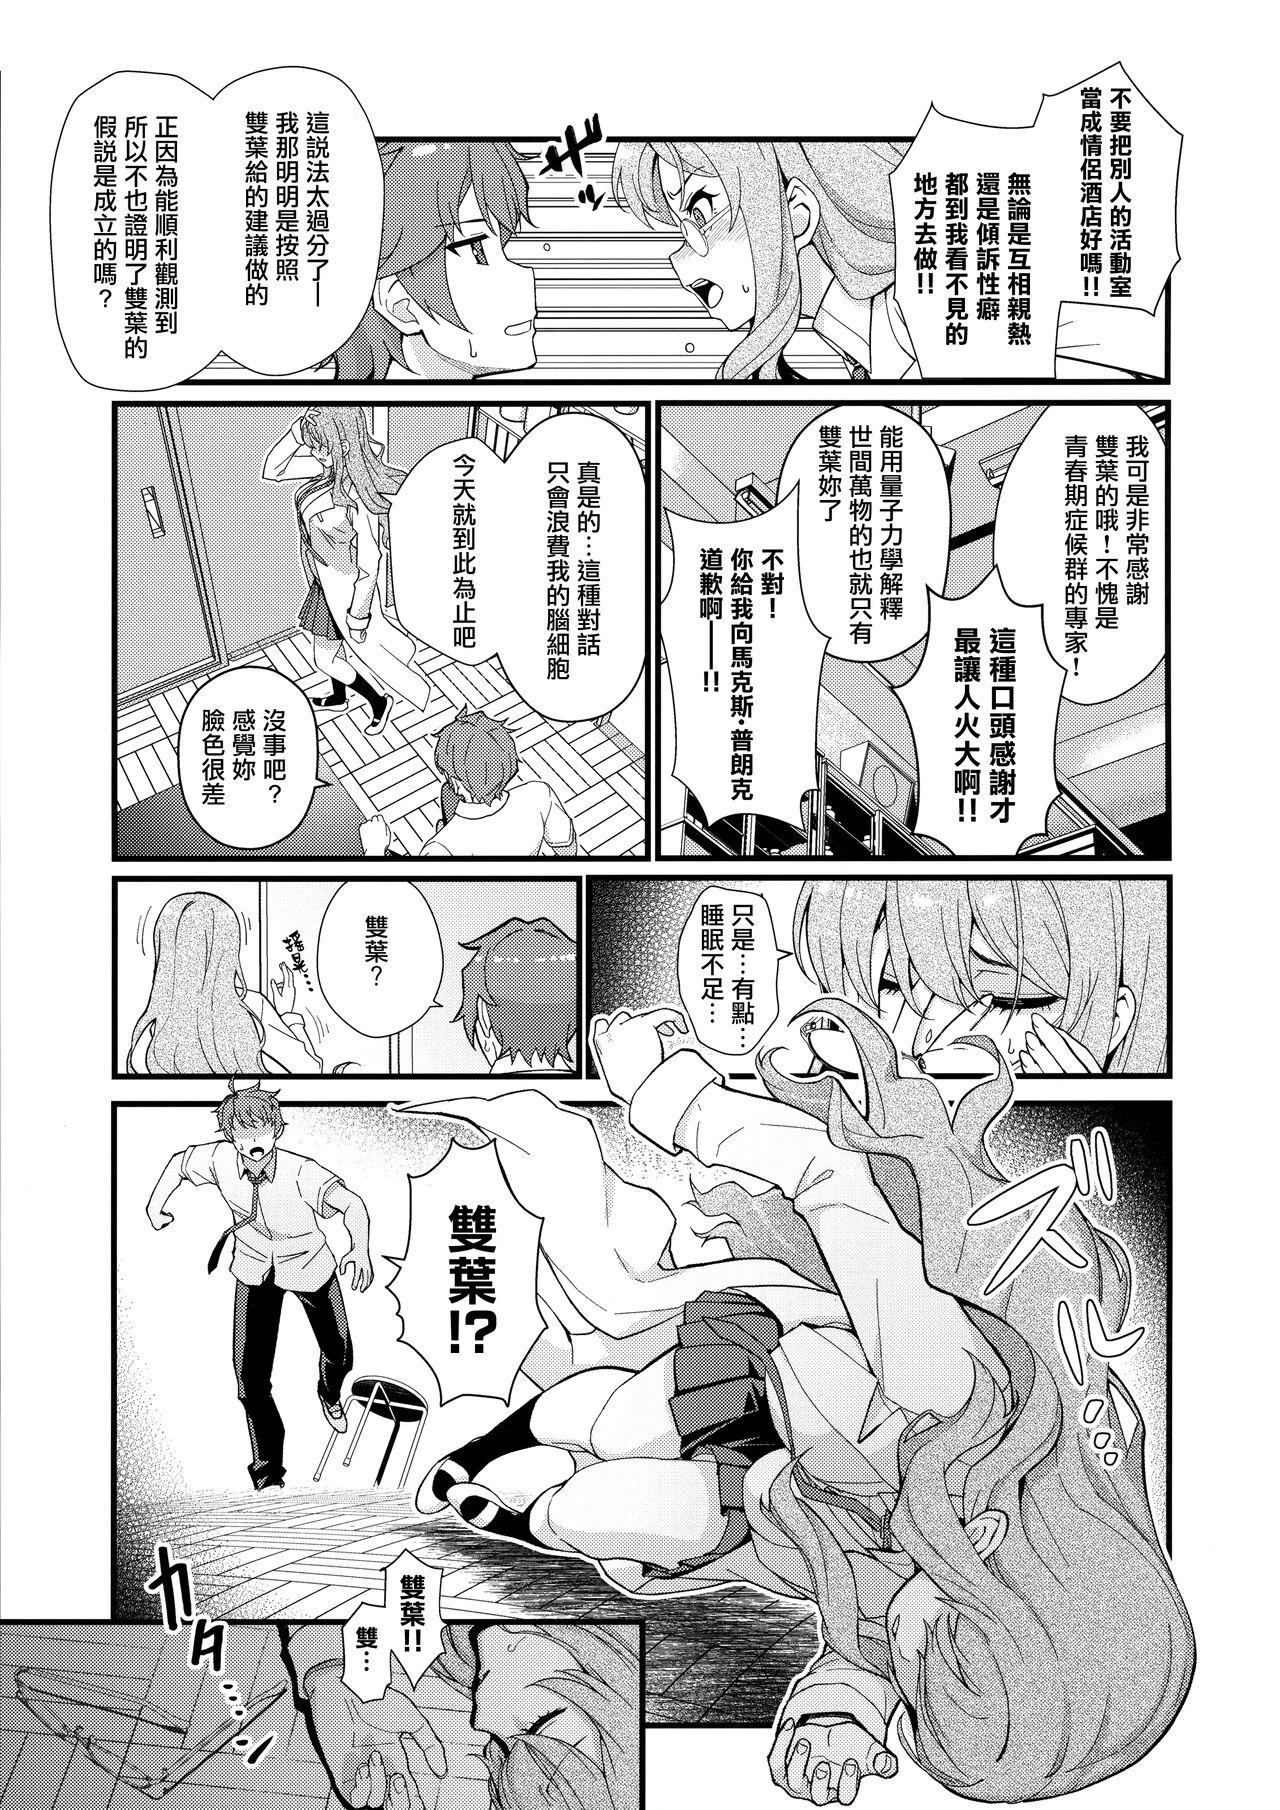 Farting MULTI REALITY - Seishun buta yarou wa bunny girl senpai no yume o minai Gordita - Page 5